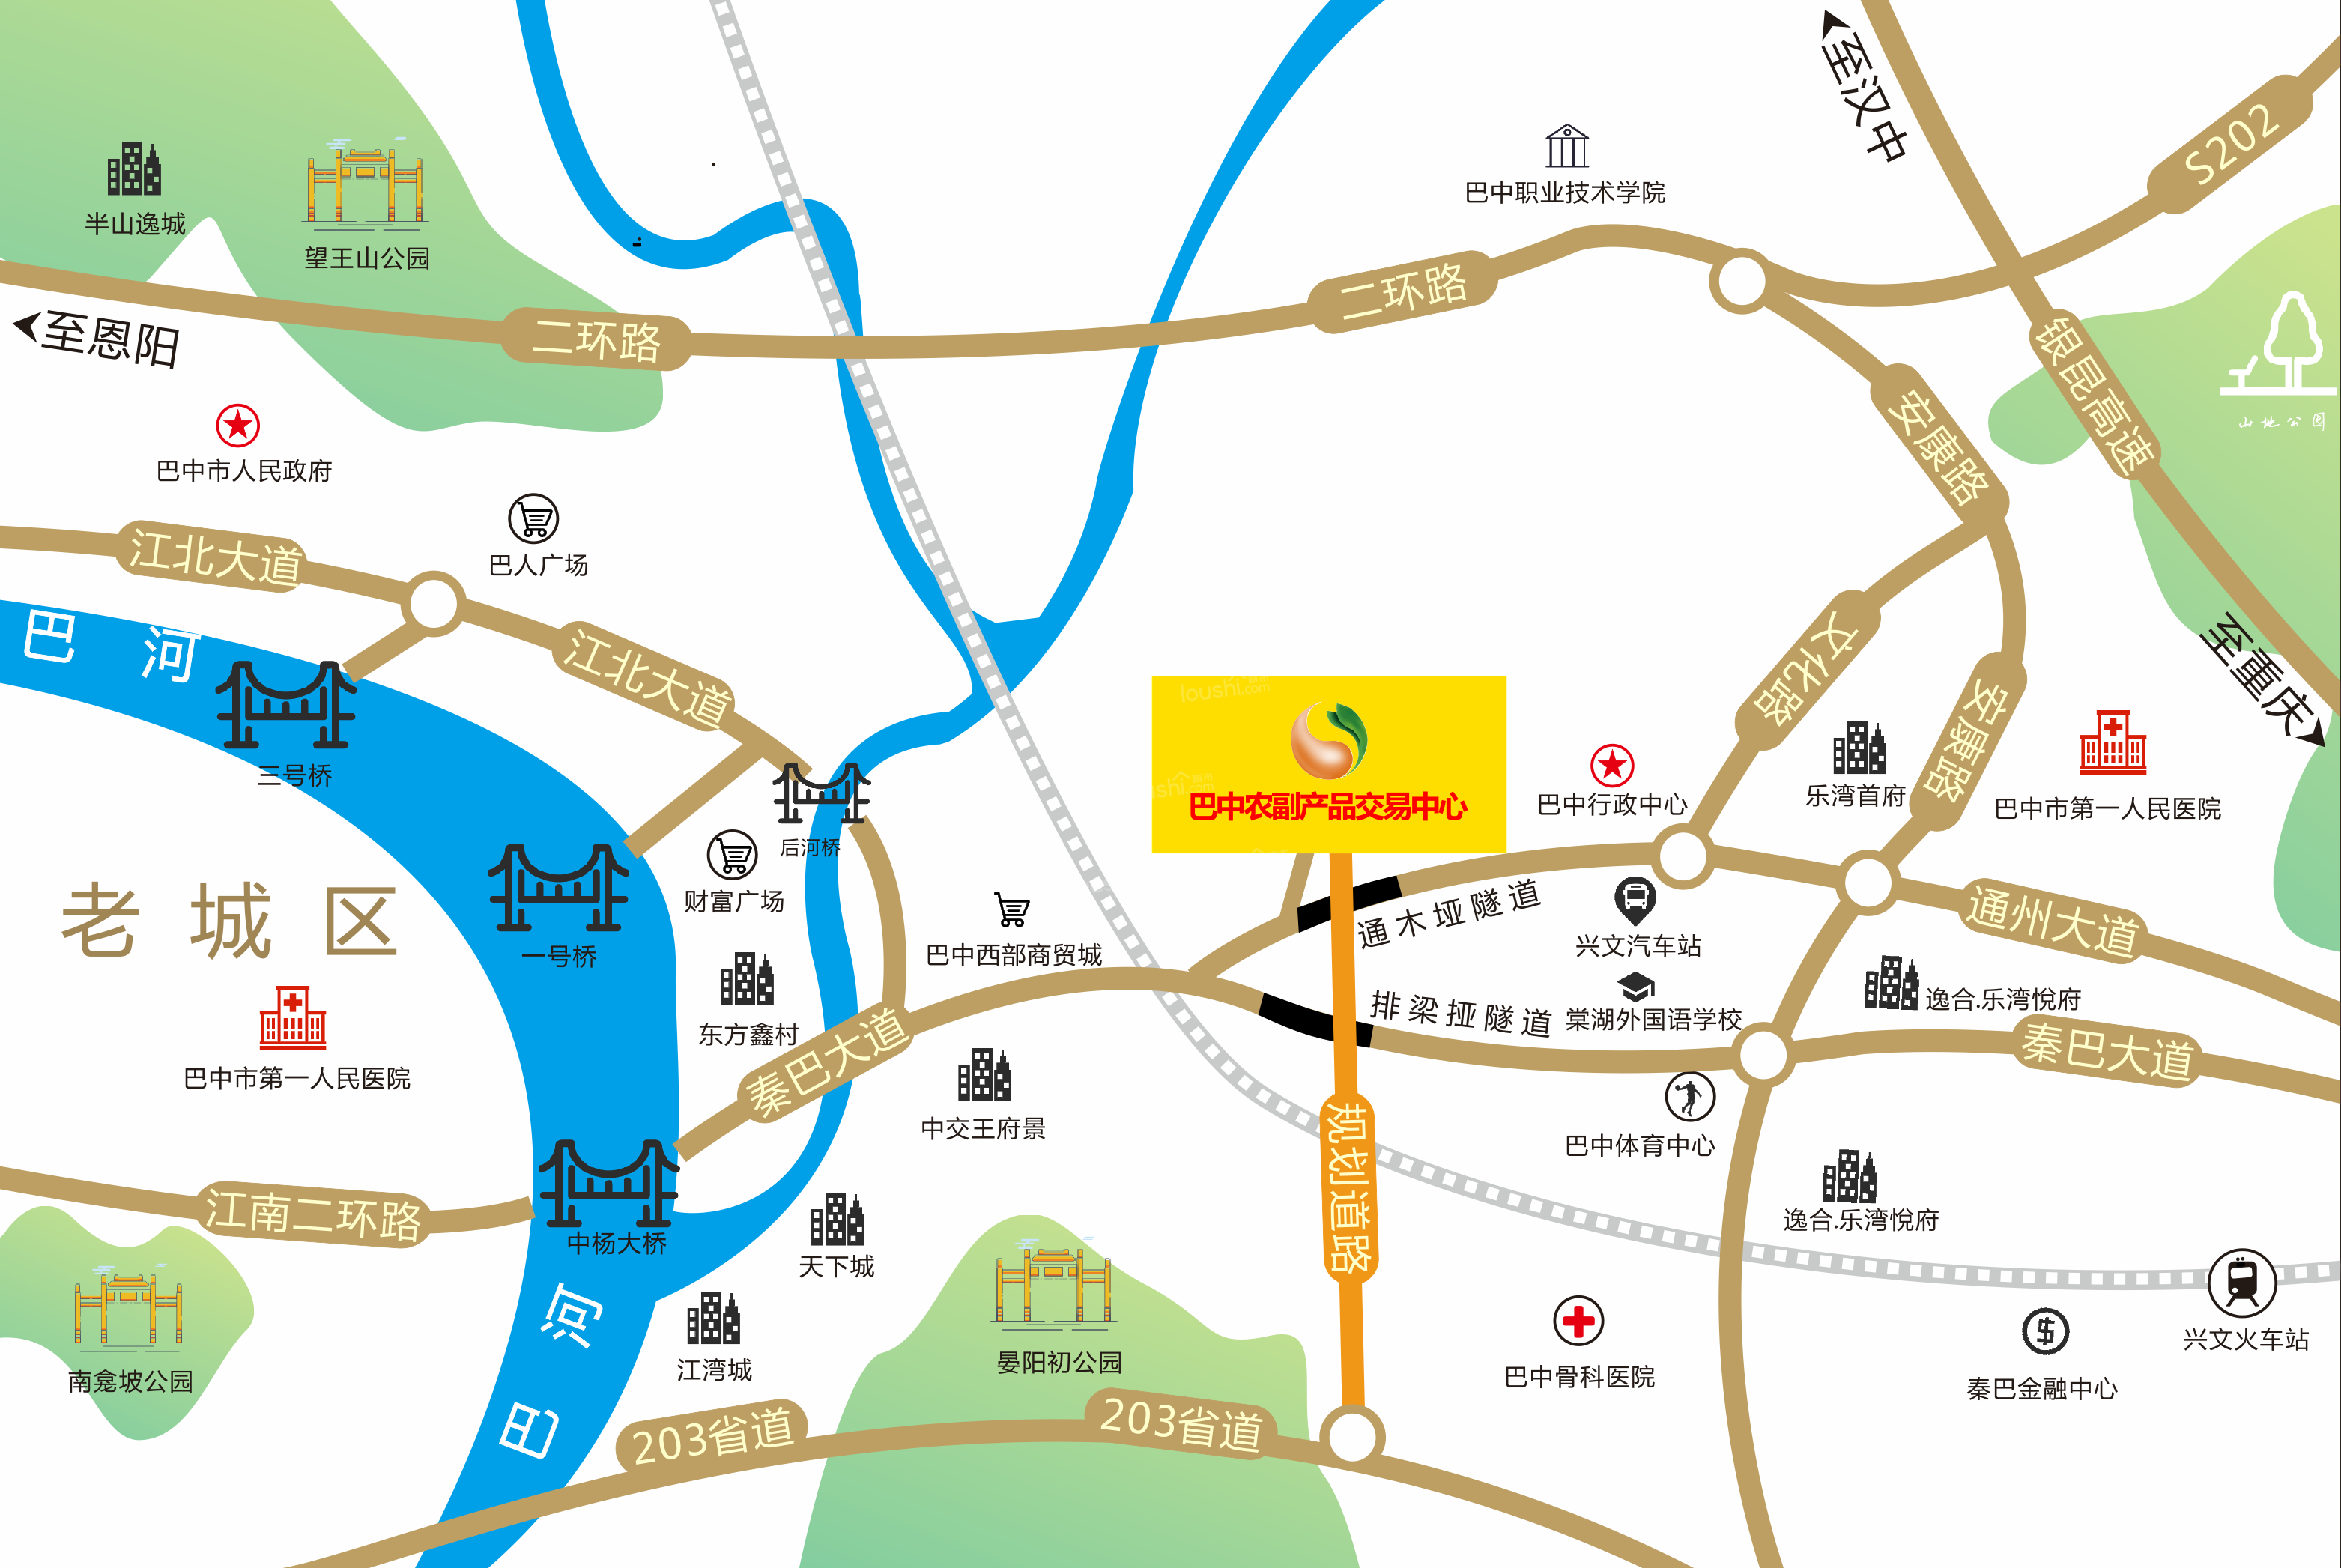 巴中农副产品交易中心位置图